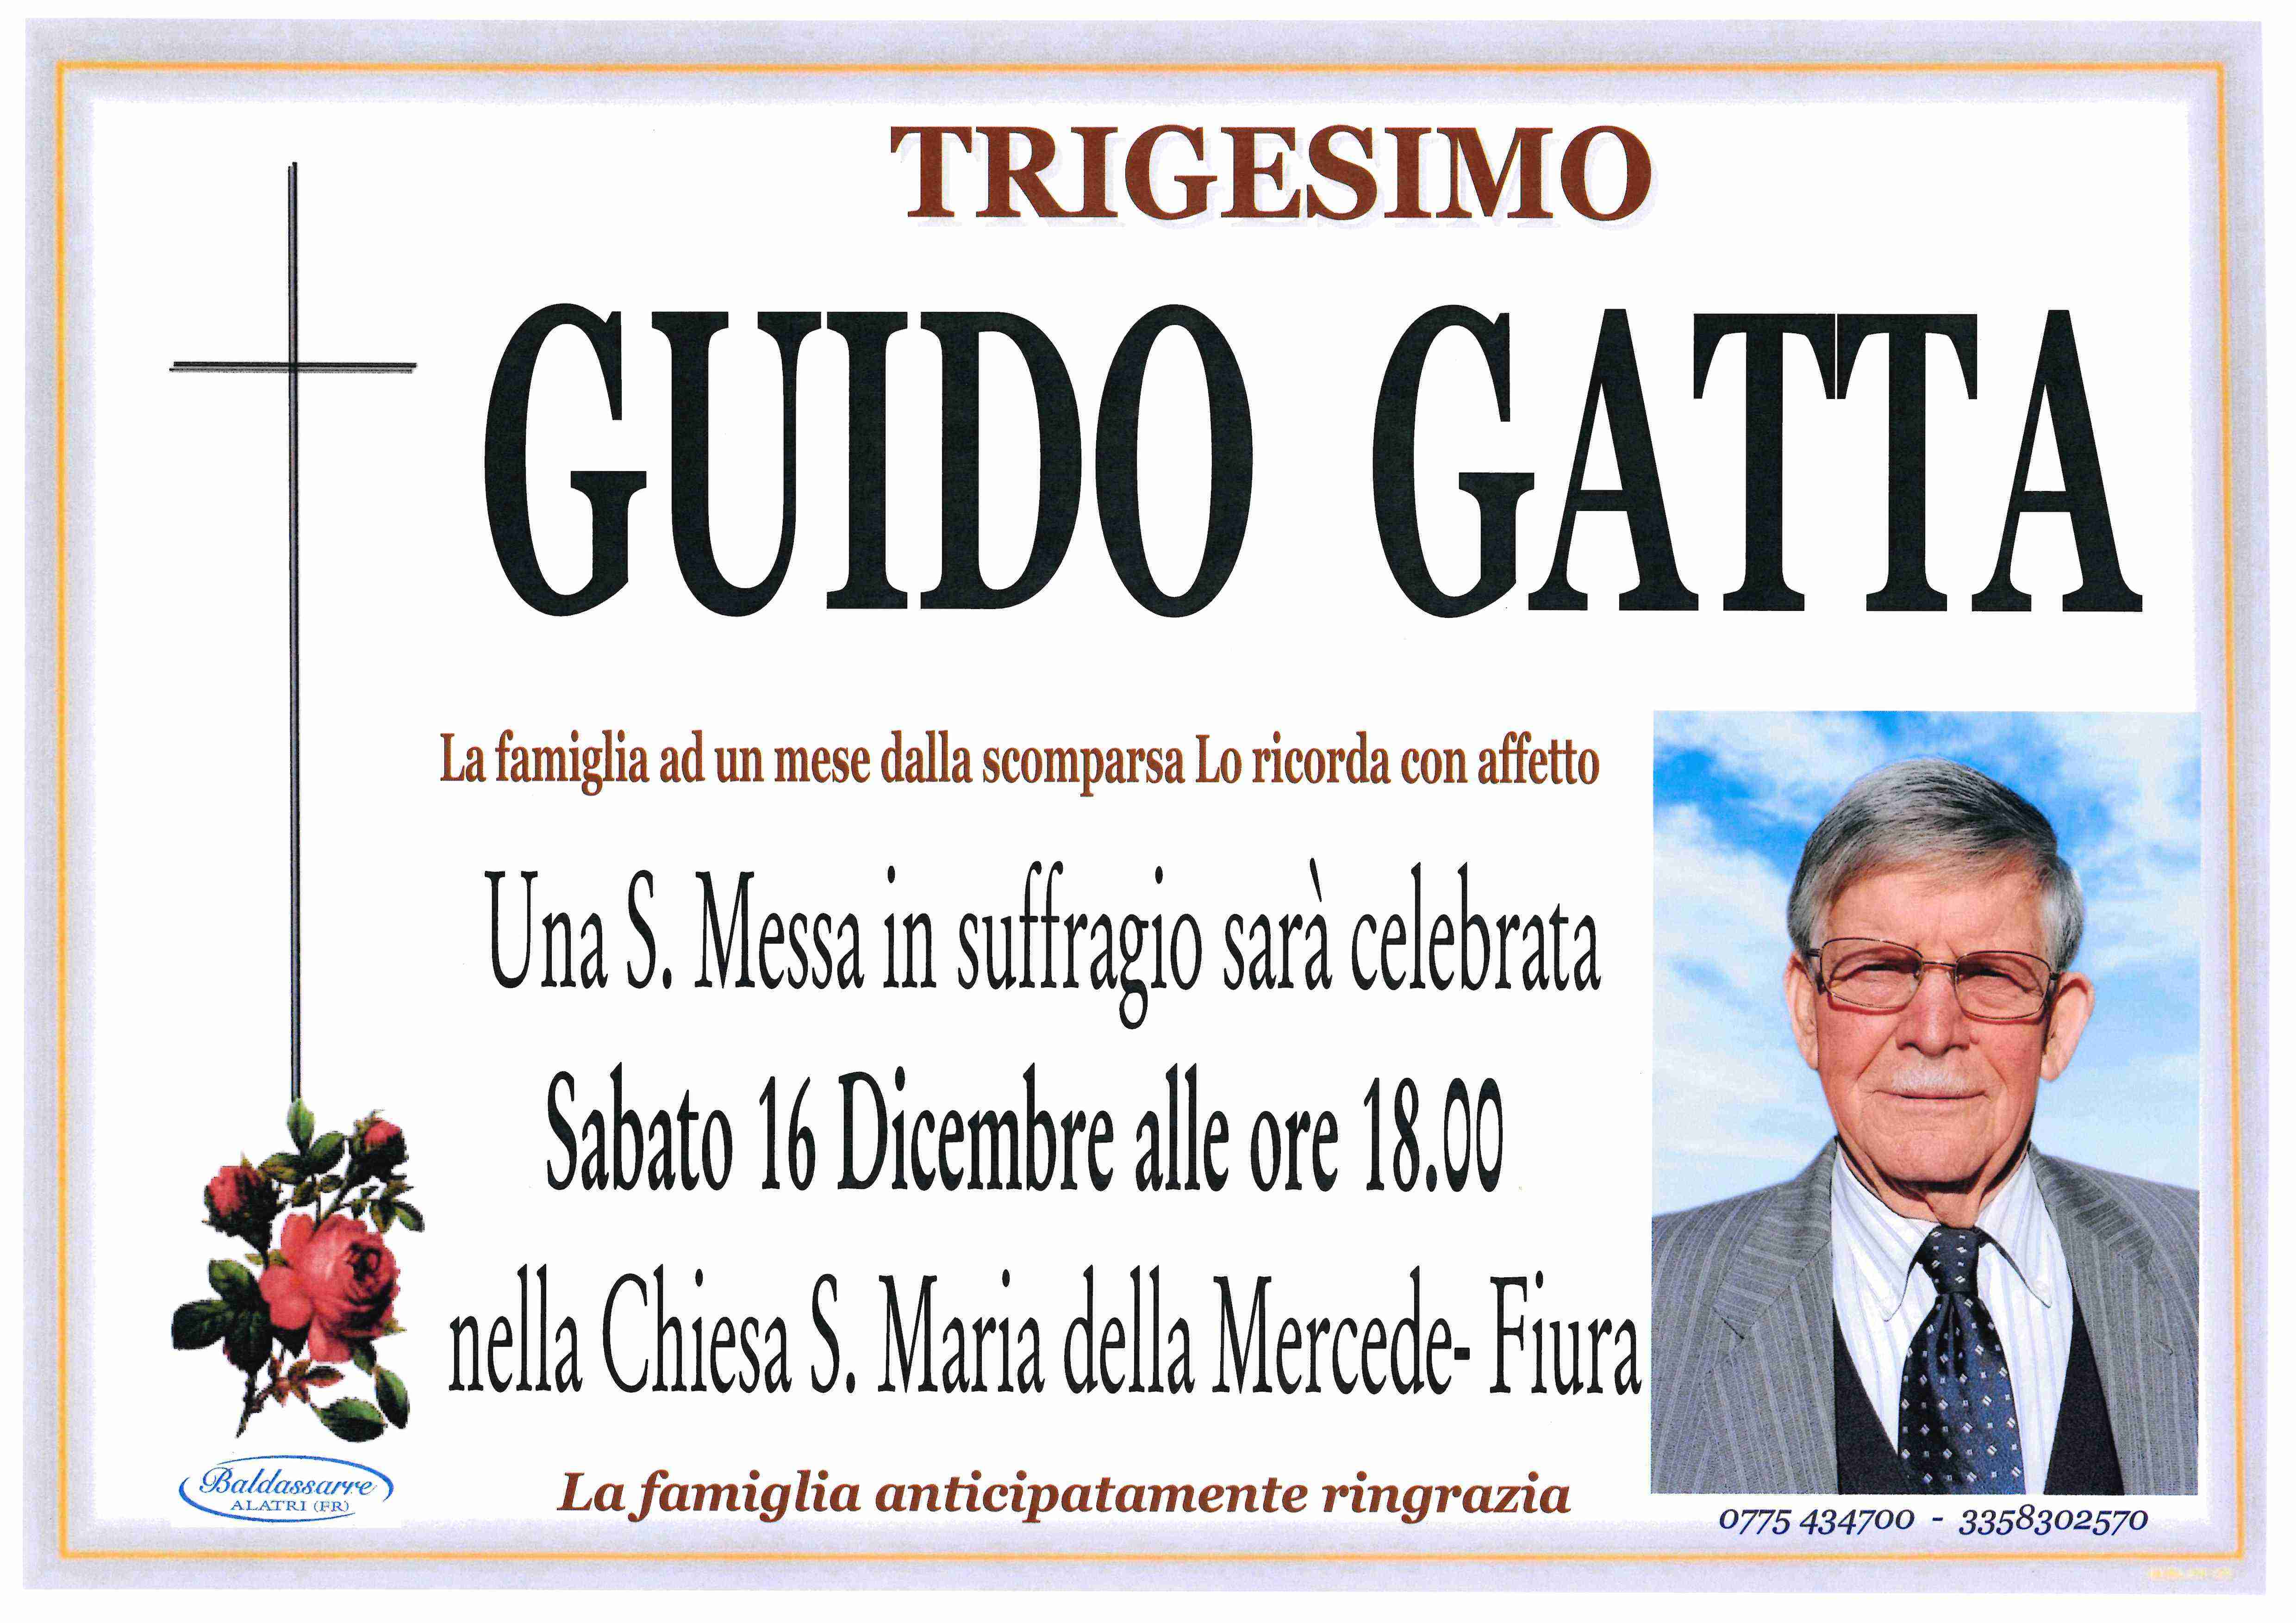 Guido Gatta